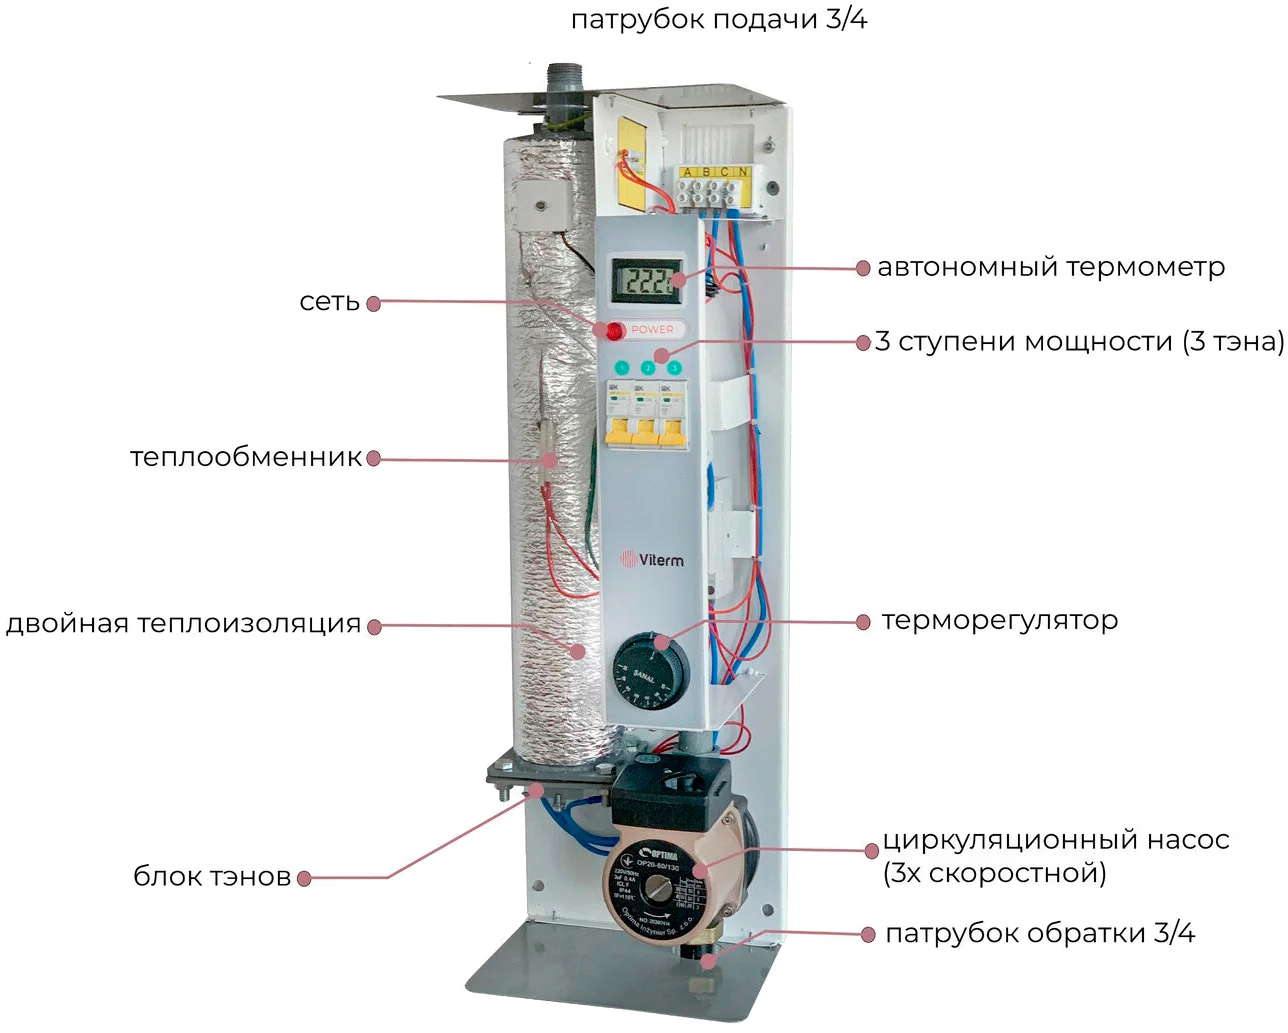 продаём Viterm Standart 15 кВт кВт 380В с насосом в Украине - фото 4